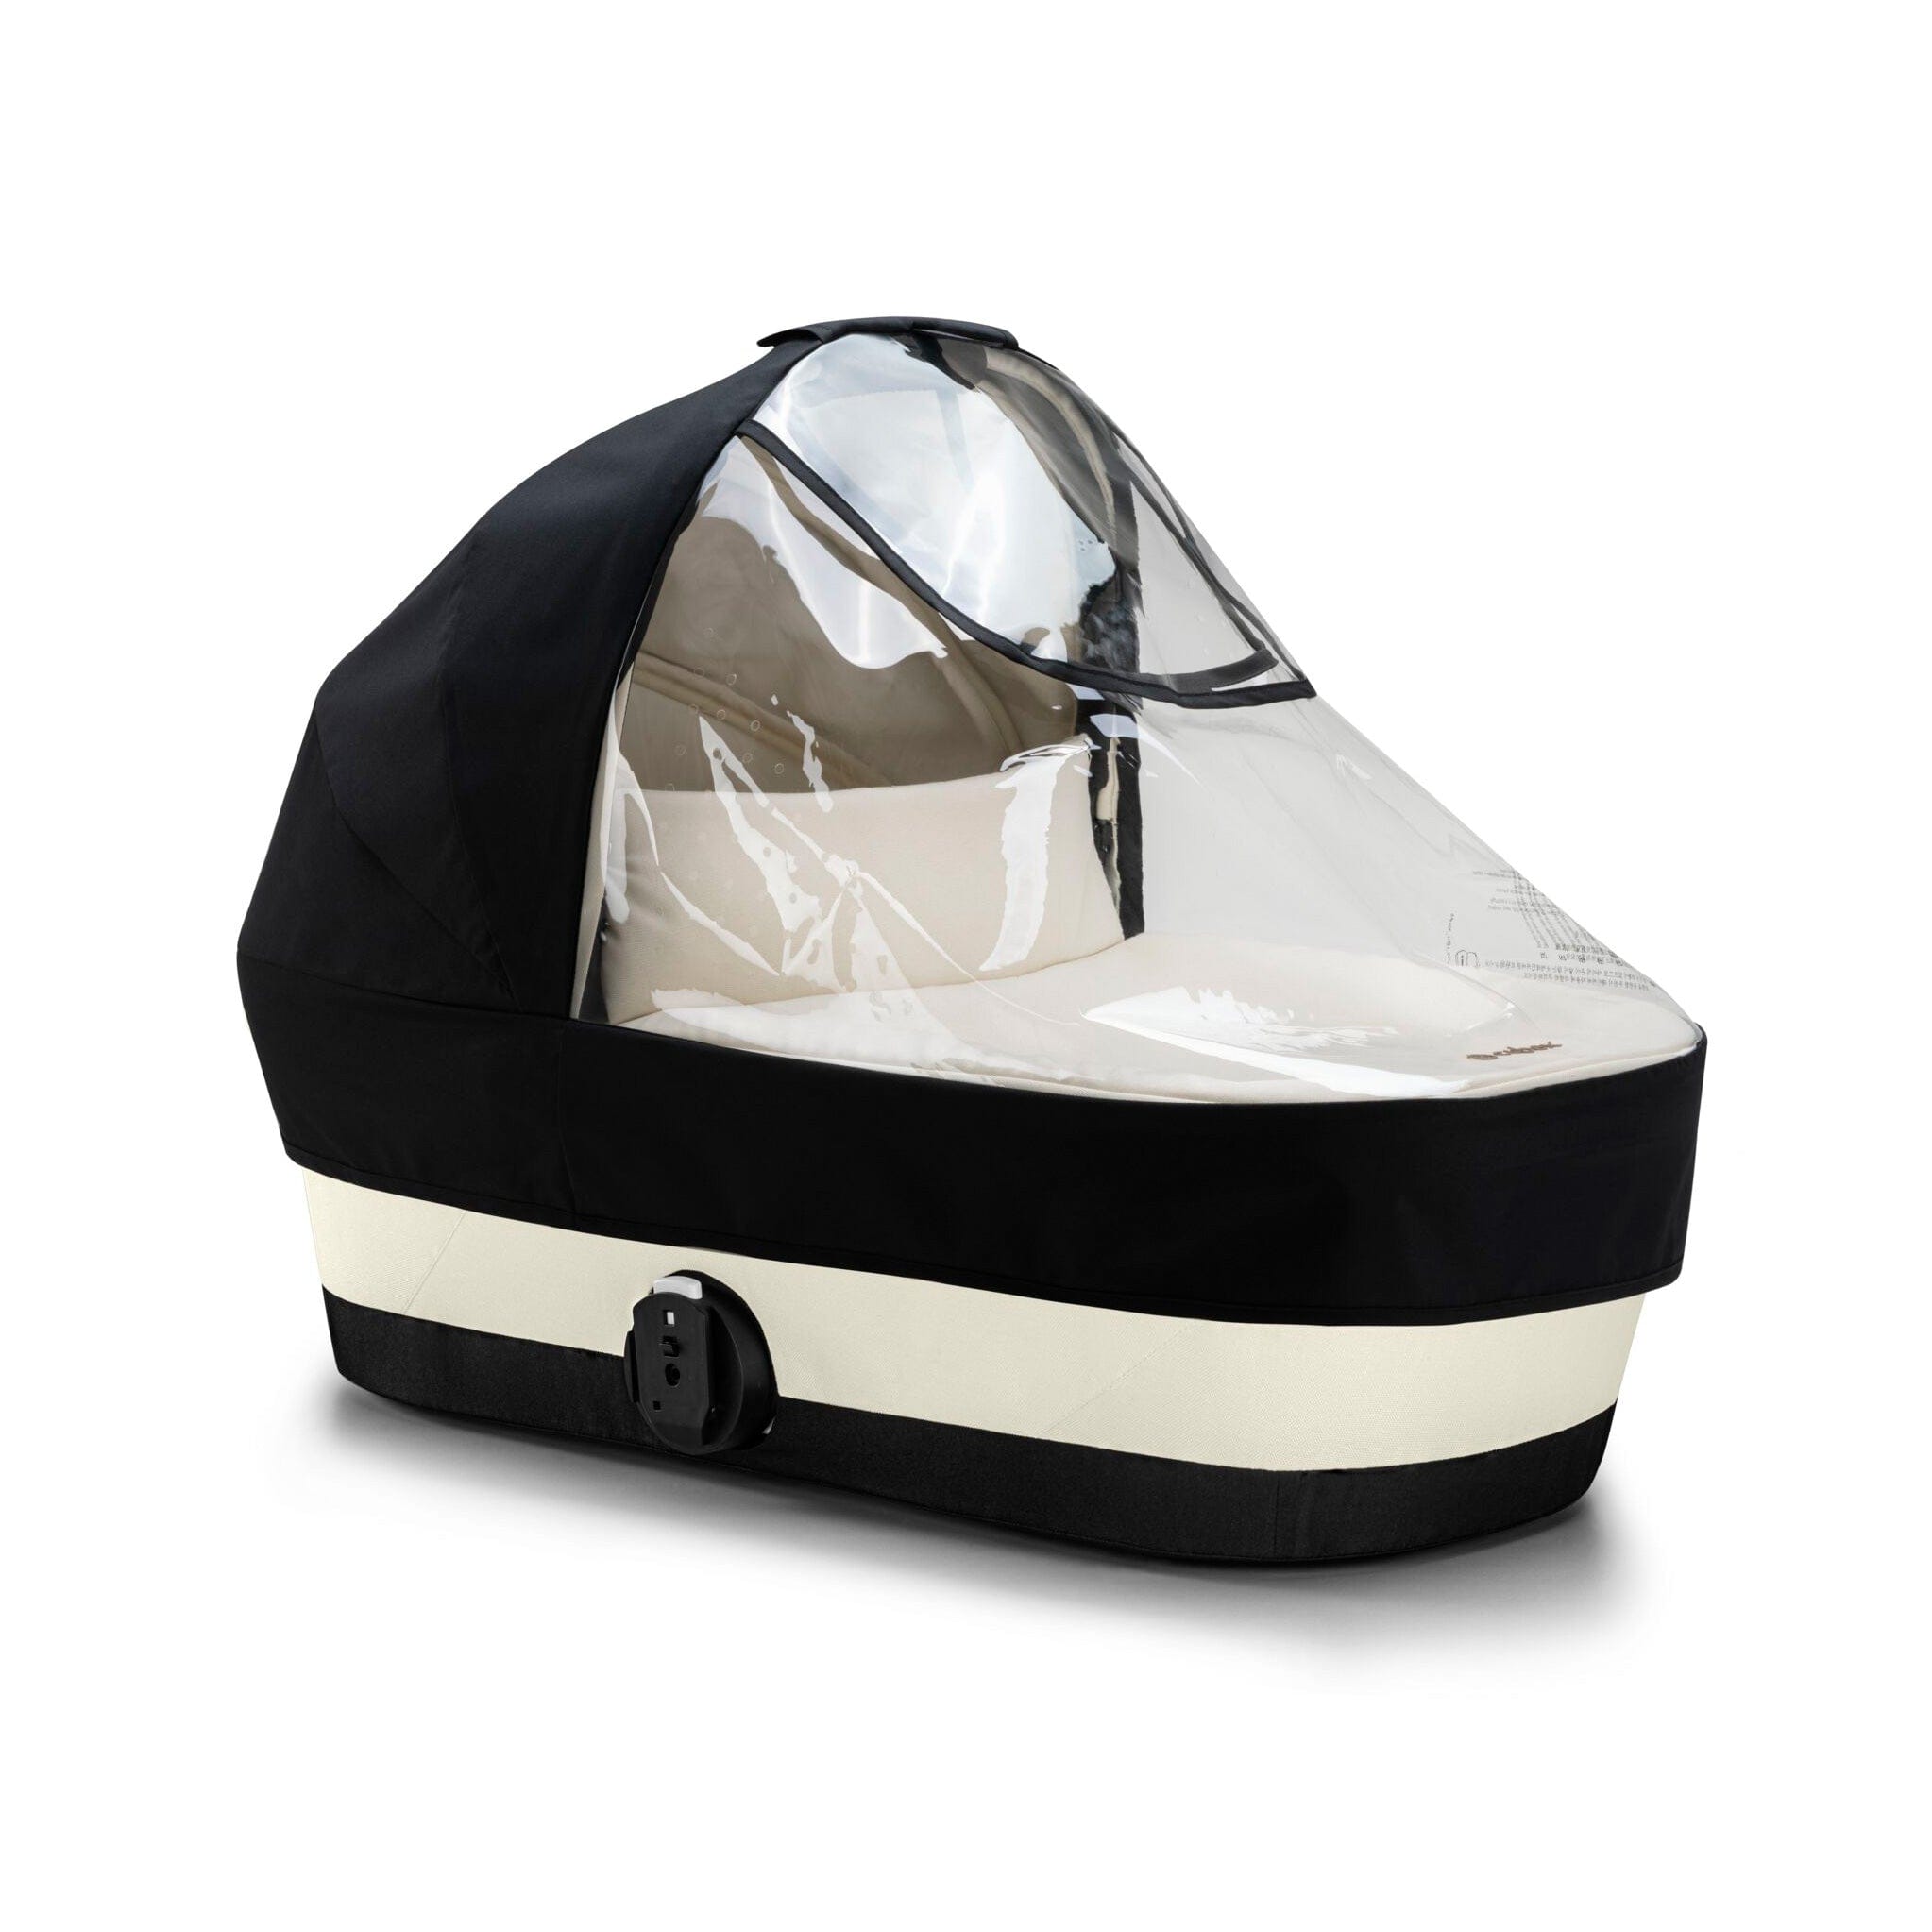 Cybex baby prams Cybex Gazelle S Comfort Bundle - Silver/Ocean Blue 12769-SLV-OCE-BLU